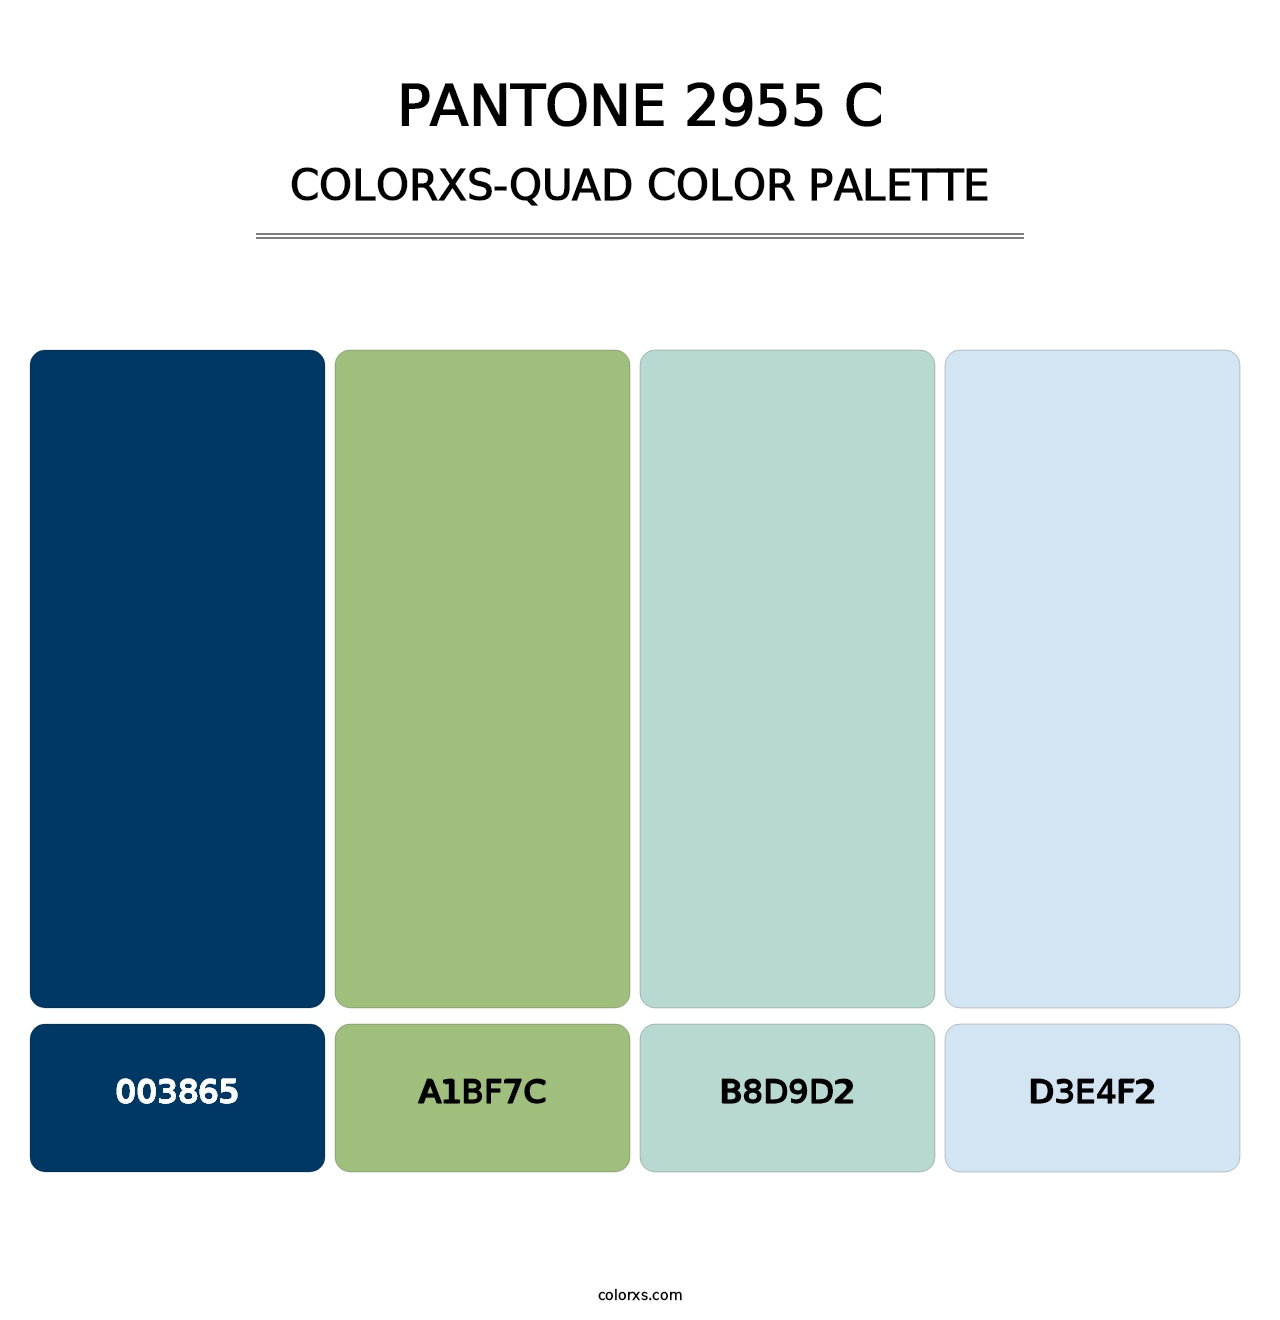 PANTONE 2955 C - Colorxs Quad Palette